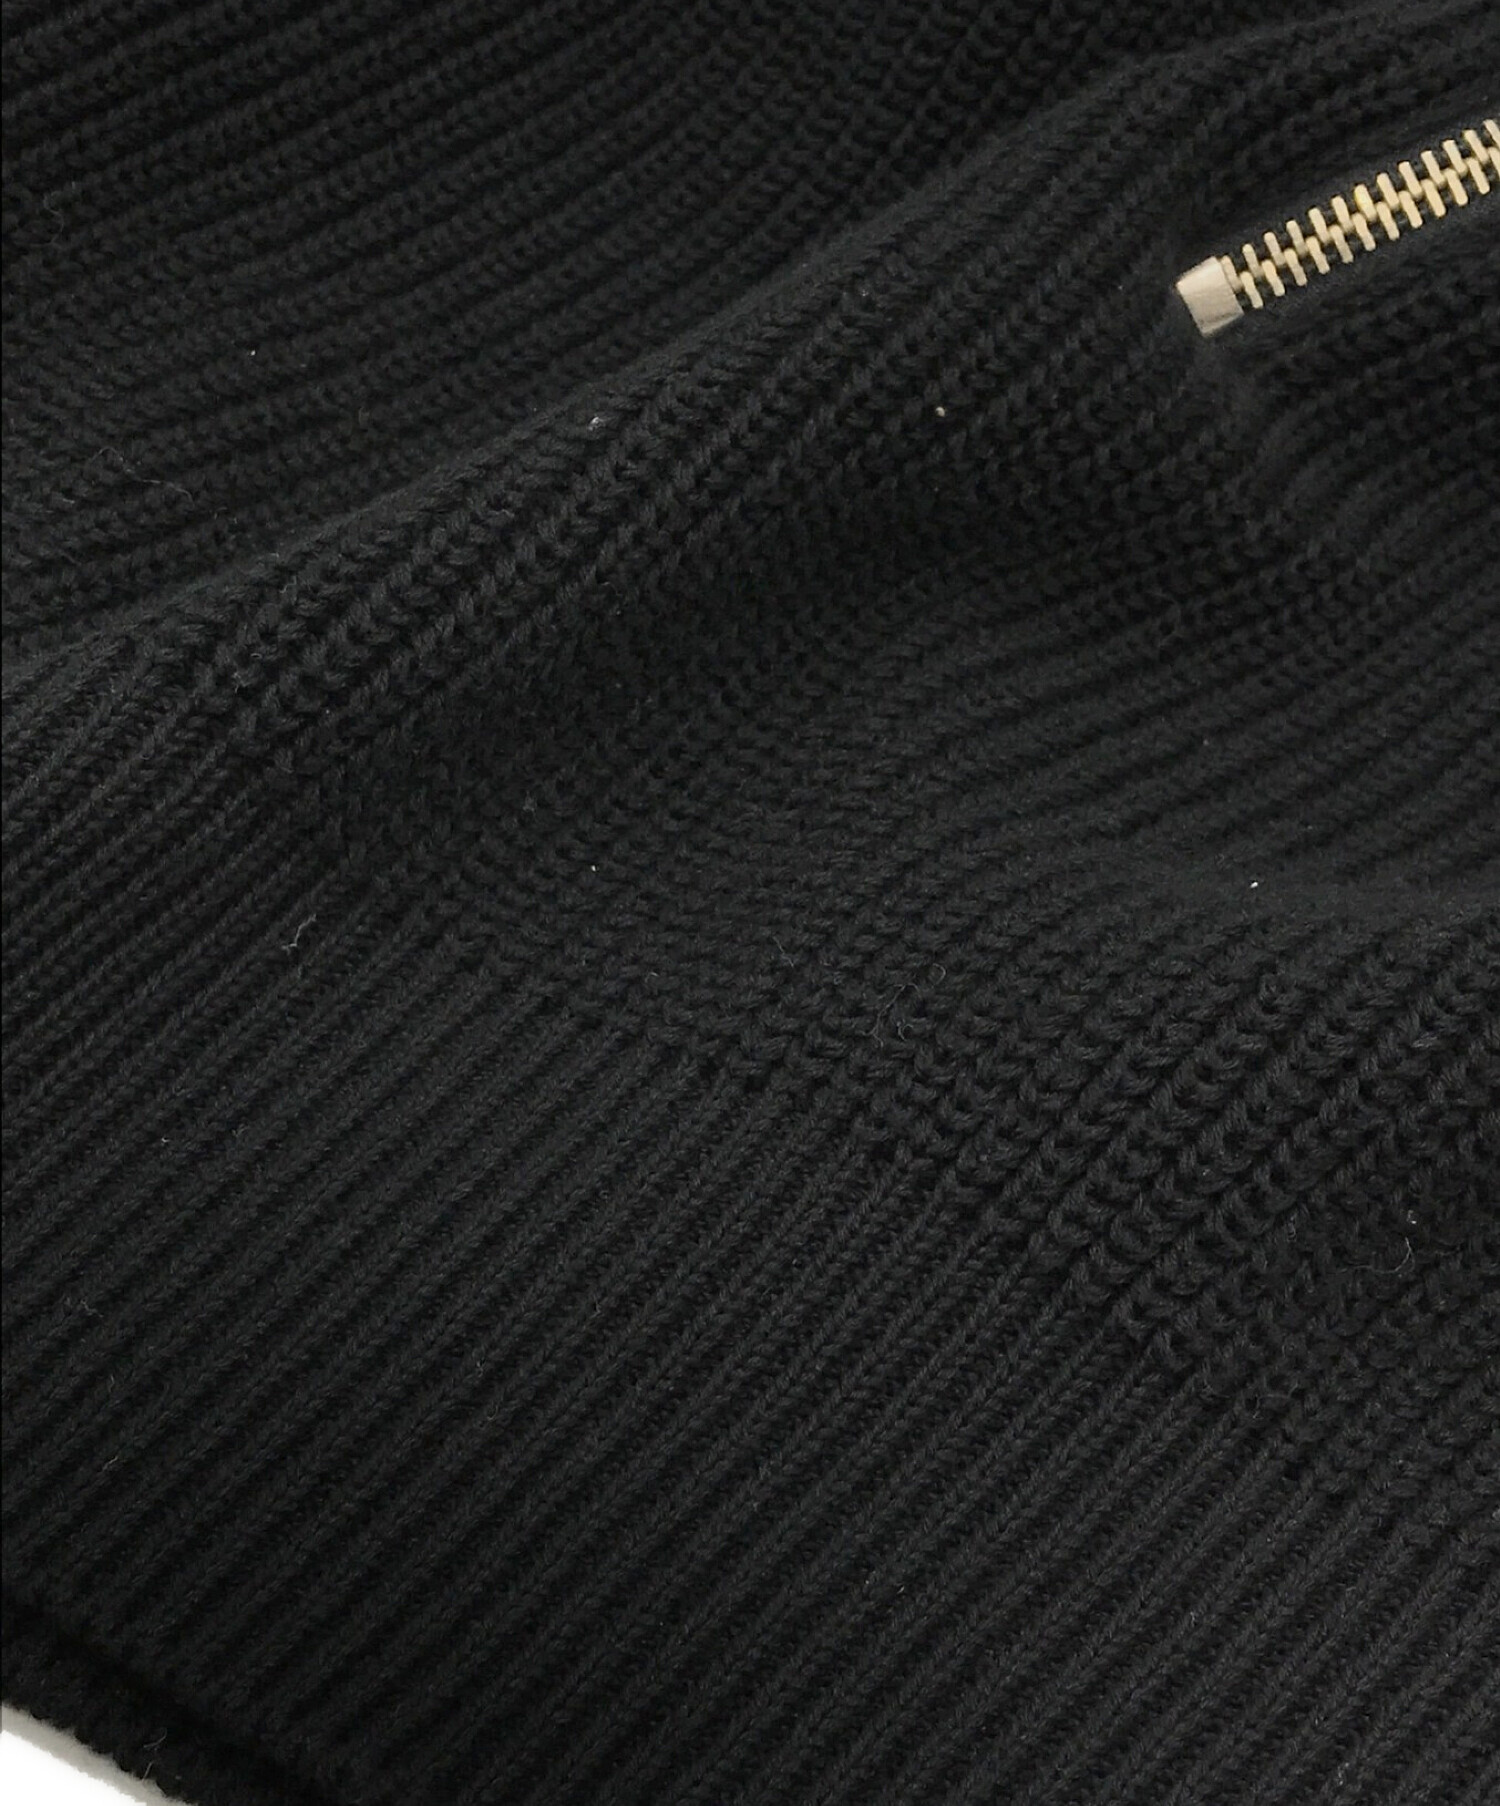 BATONER × L'ECHOPPE (バトナー×レショップ) Half Zip Ficsherman Knit ブラック サイズ:L